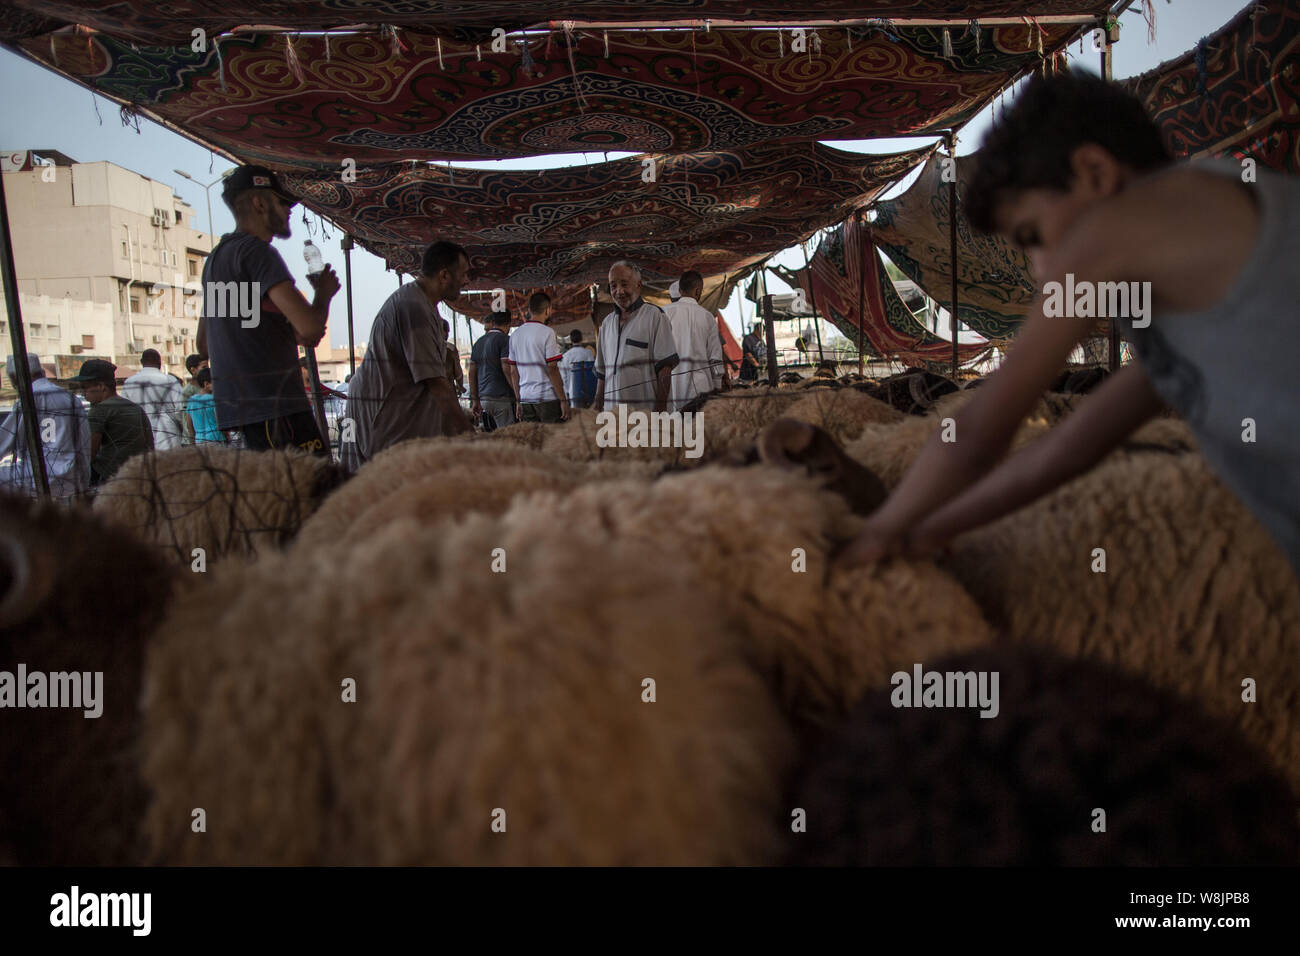 Tripolis, Libyen. 9 Aug, 2019. Menschen kaufen Schafe an einem Viehmarkt in Tripolis, Libyen, am Aug 9, 2019. Der libyschen National Animal Health Center am Freitag sagte, dass 350.000 Schafe für das Eid al-Adha, oder das "Festival des Opfers importiert wurden." Quelle: Amru Salahuddien/Xinhua Stockfoto